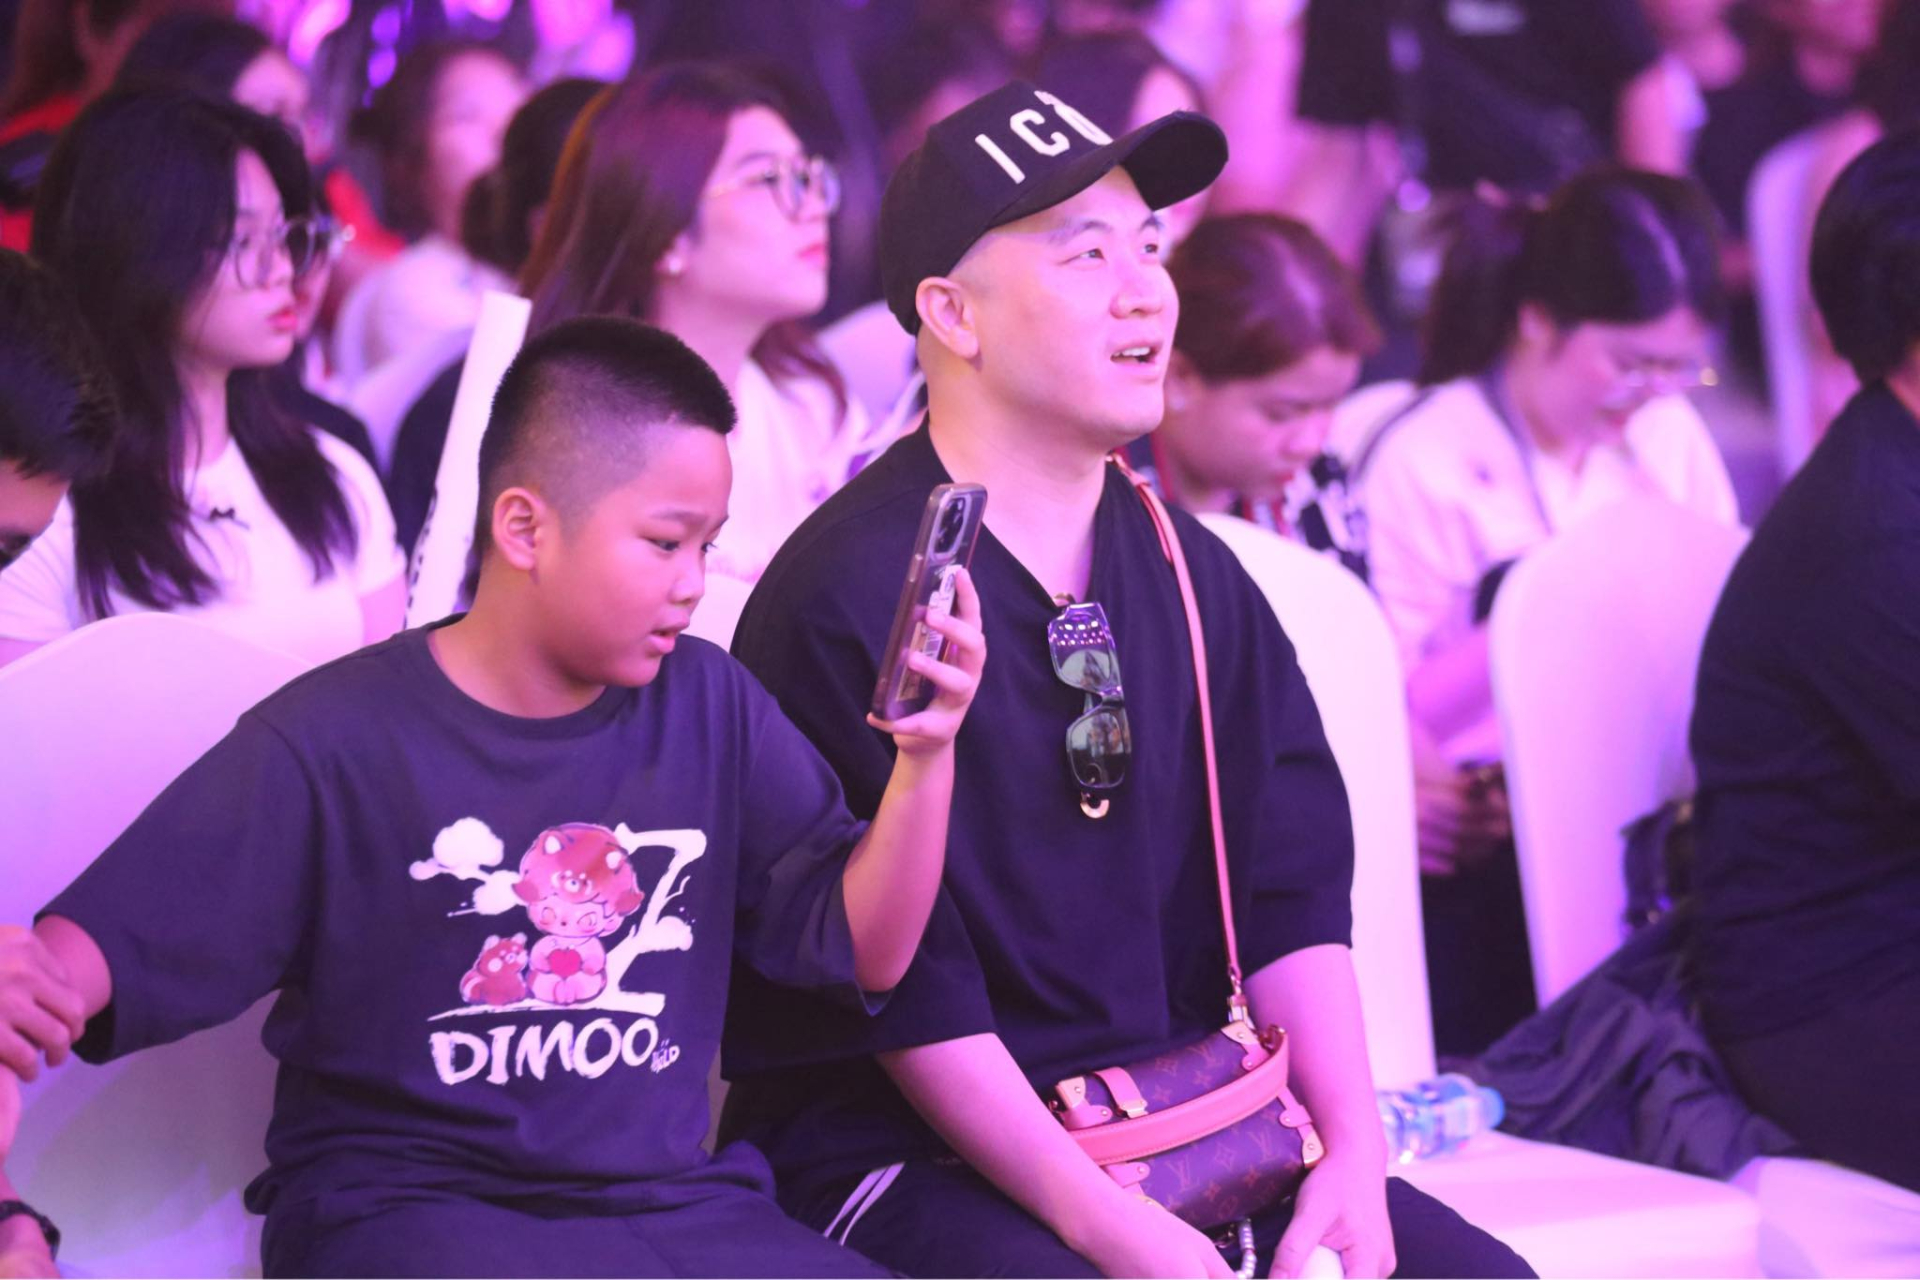 Đỗ Mạnh Cường đưa con trai đến showcase debut của LUNAS, cổ vũ đúng chuẩn 'fan cứng' - ảnh 4